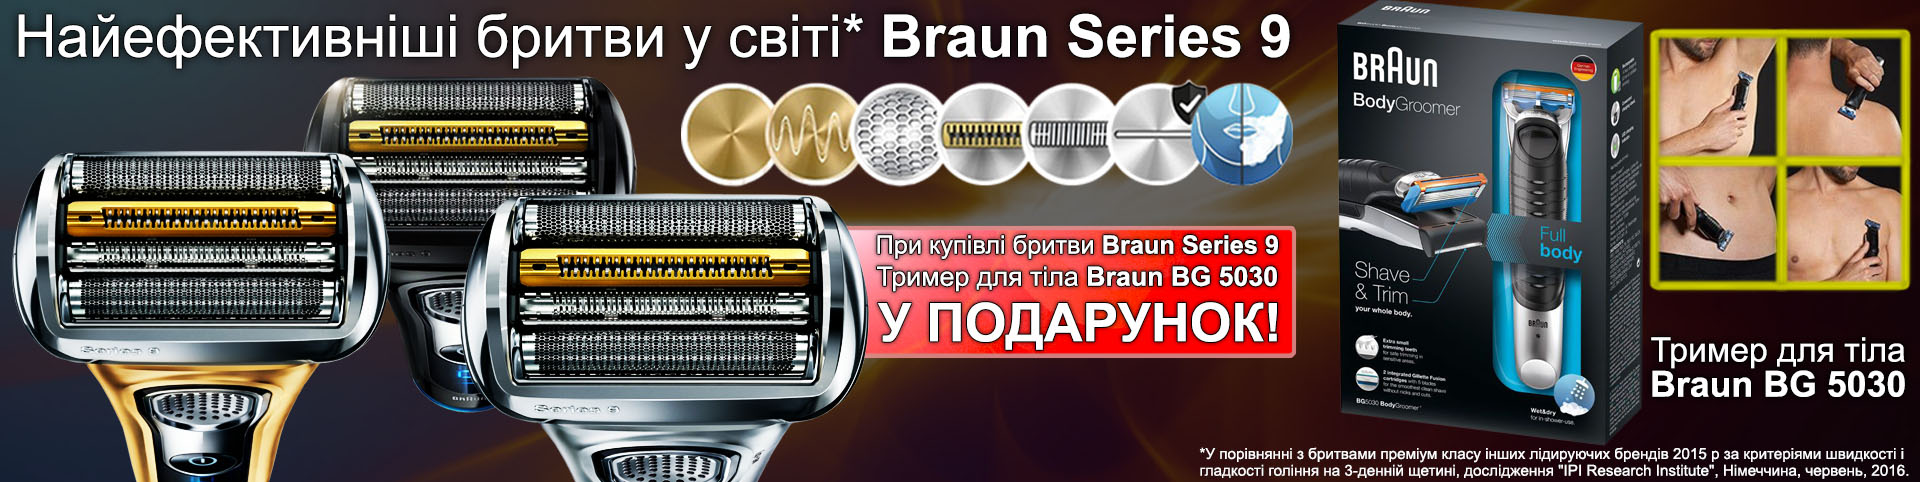 Купуючи бритву Braun Series 9, у подарунок ви отримуєте тример для тіла BG 5030